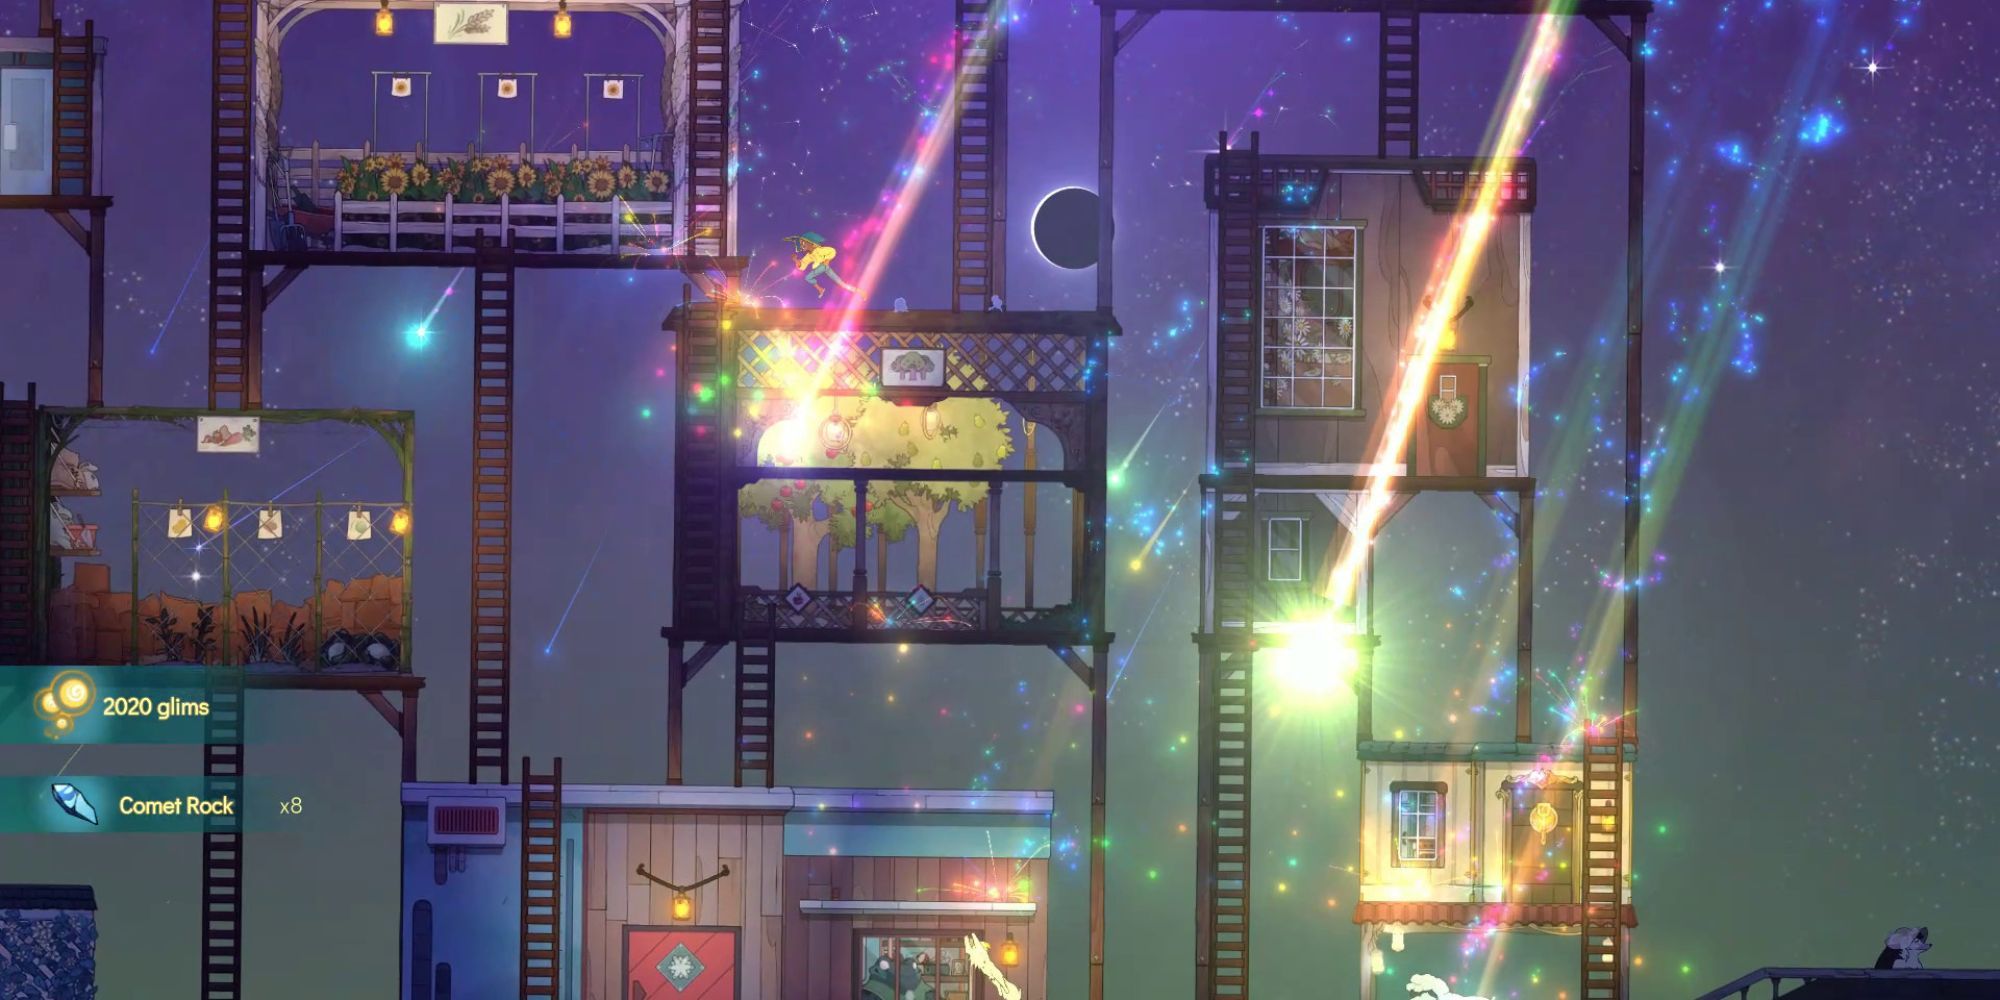 Player running across a roof catching shooting lights in Spiritfarer